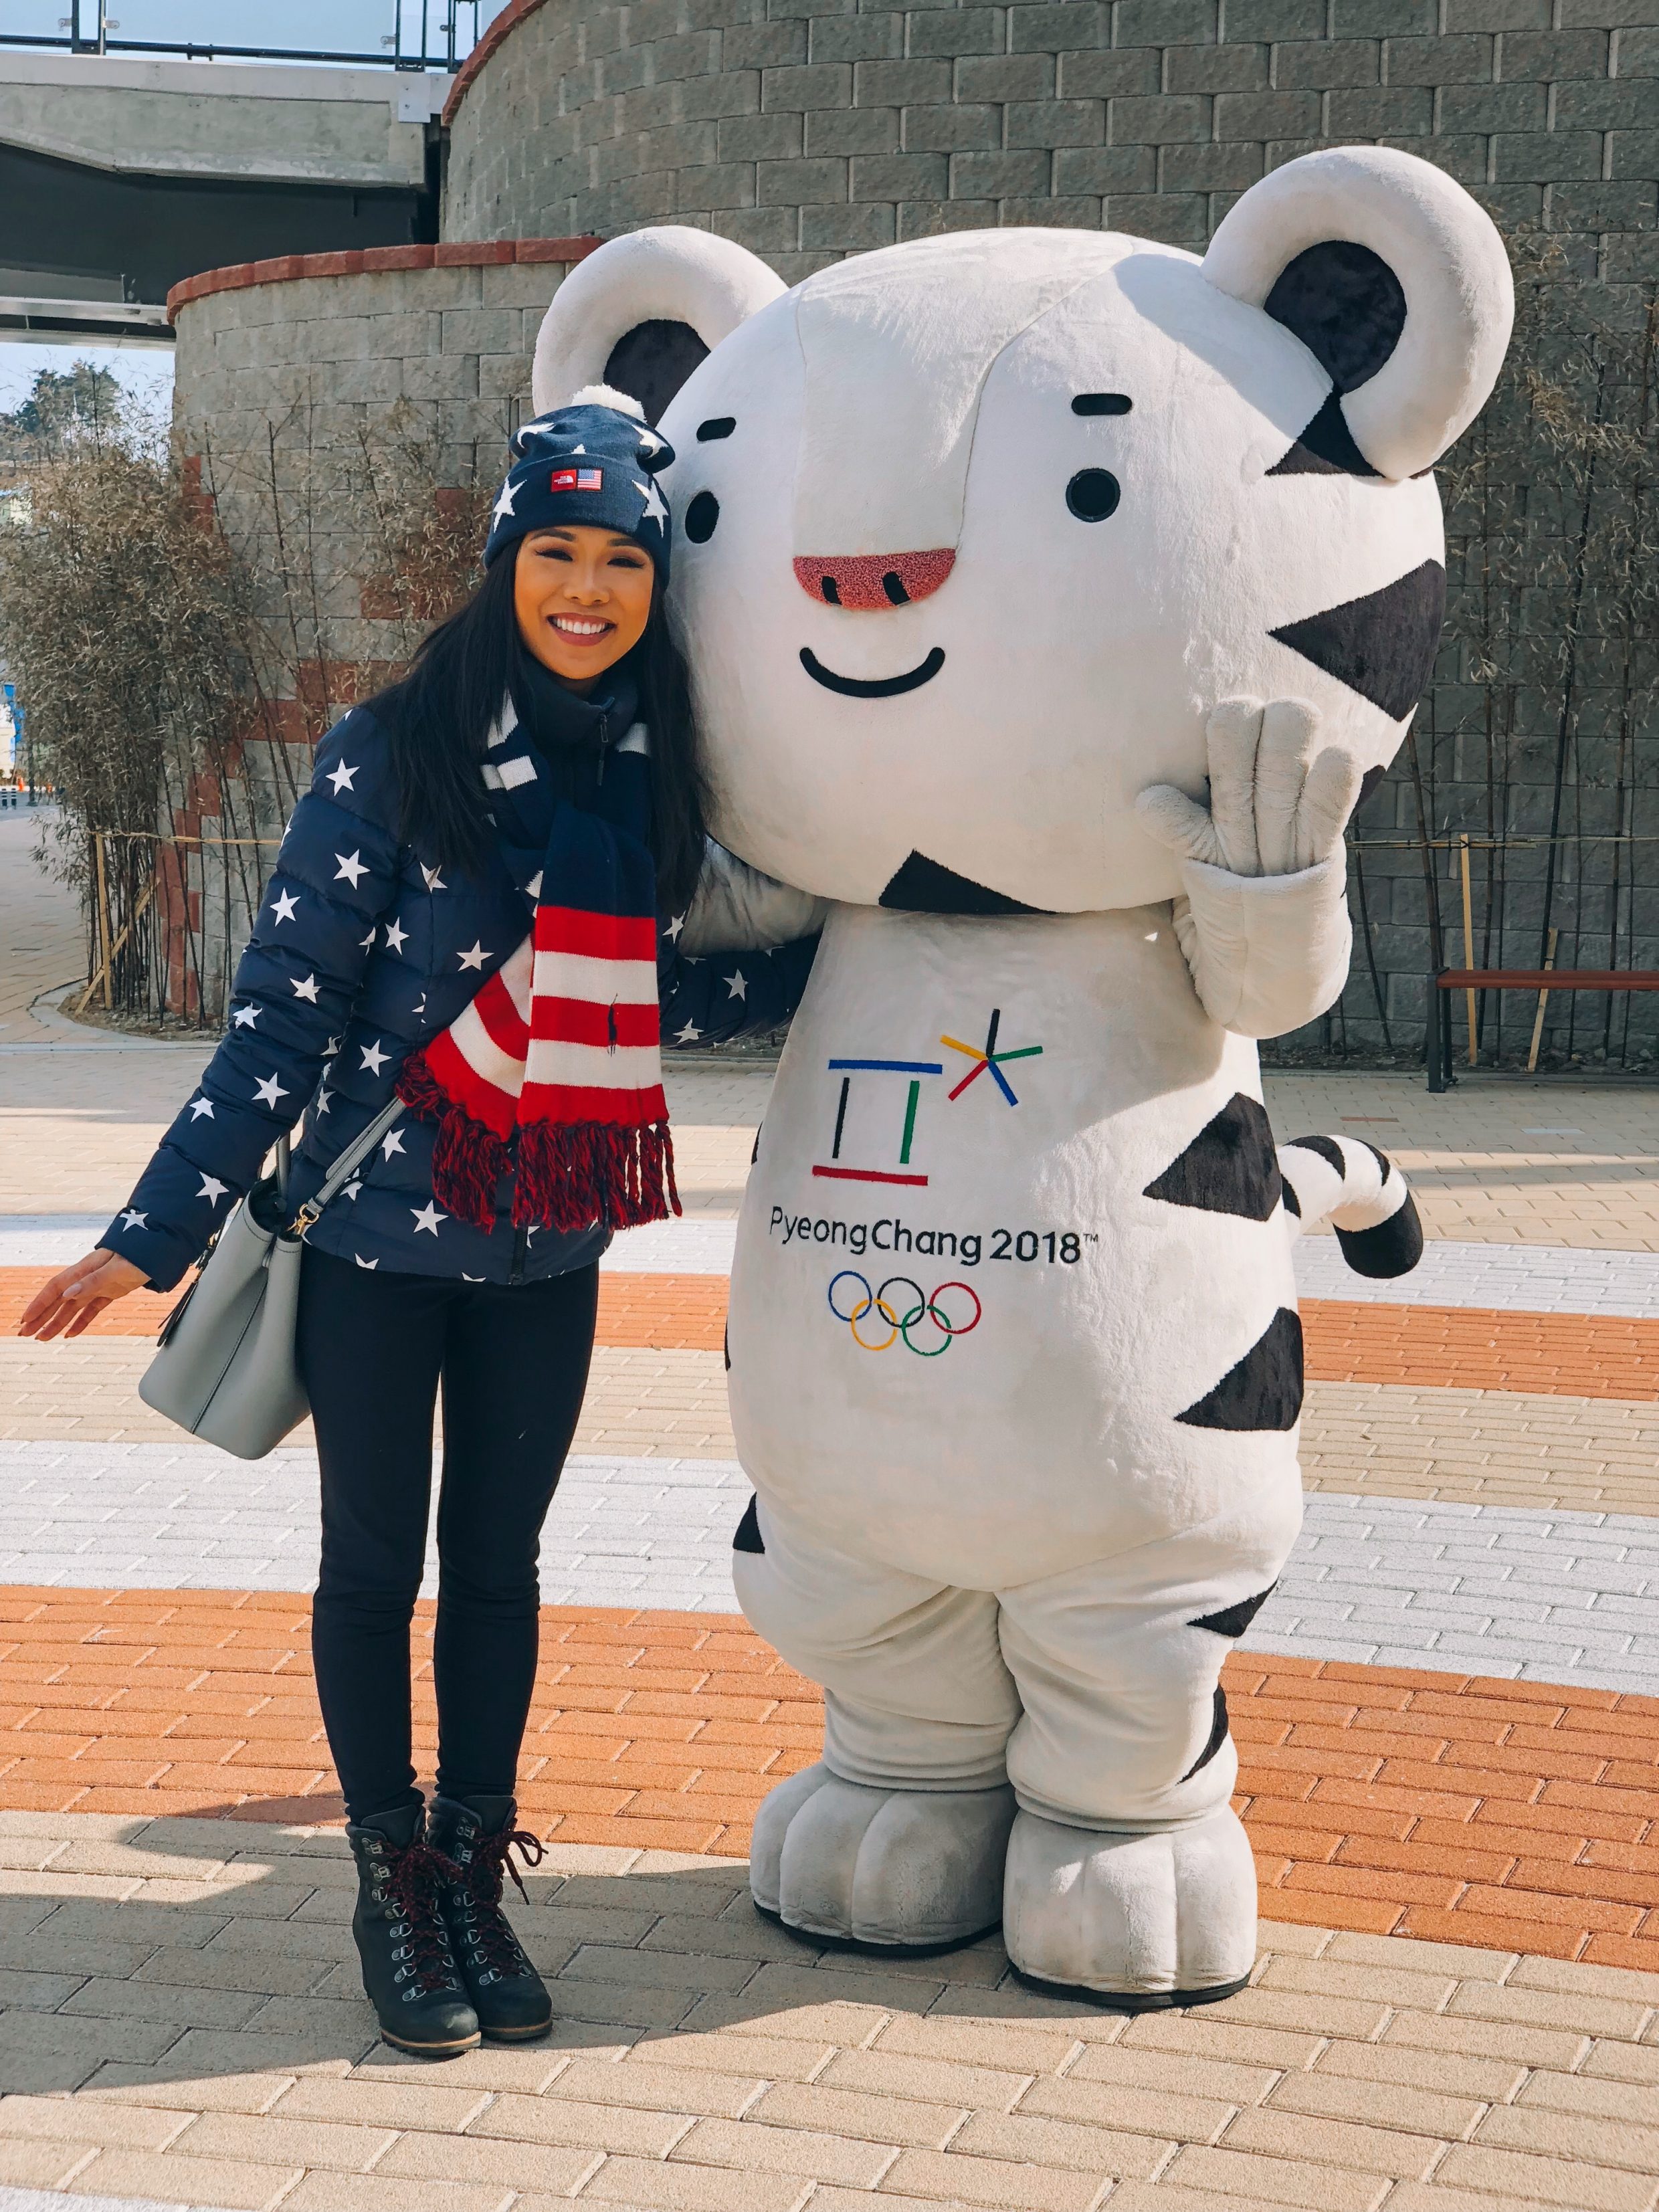 Hoang-Kim wearing The North Face Team USA Star Print Gear with Soohoorang, the PyeongChang 2018 Winter Olympics Mascot